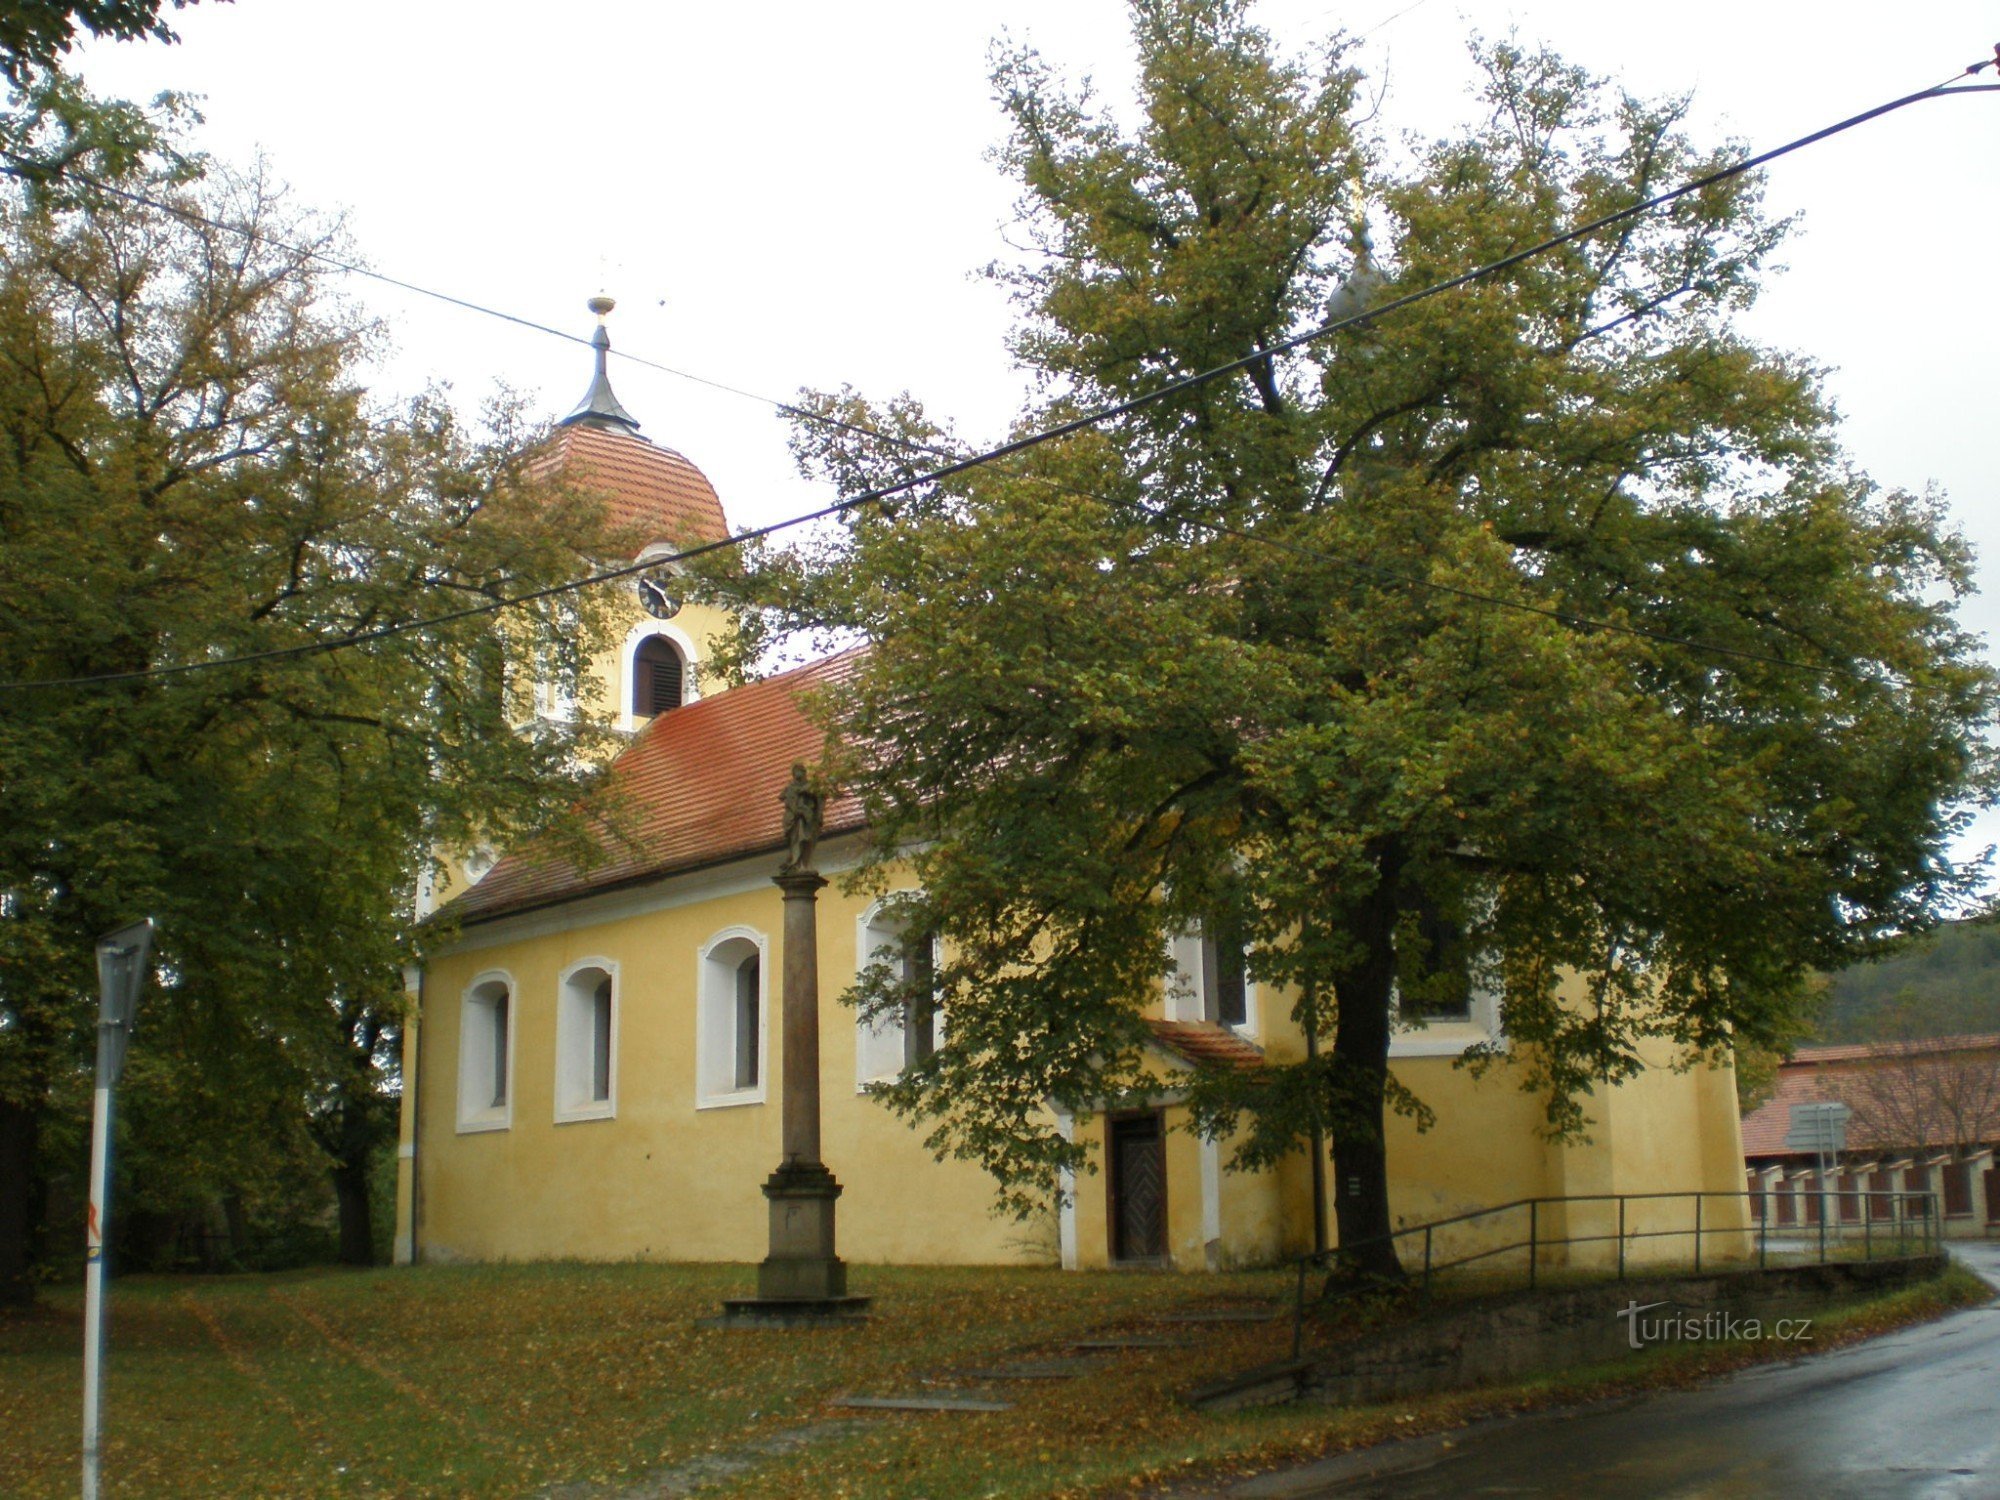 Лоховице - церковь св. Эндрю